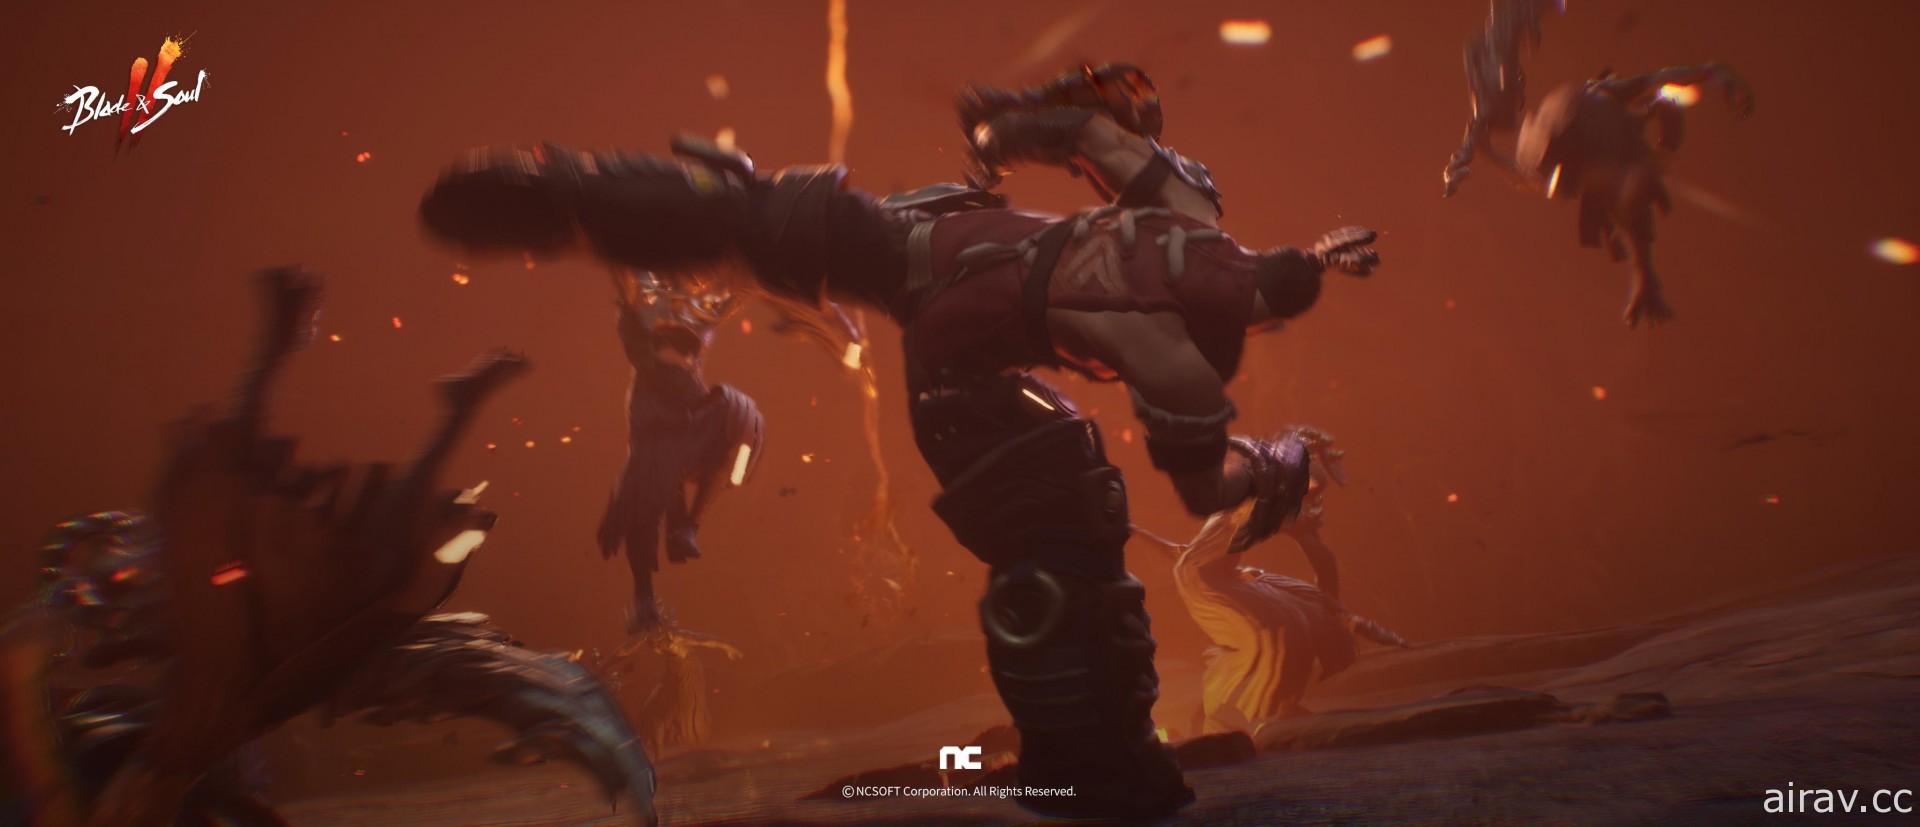 《剑灵 2》公开最新宣传影片 揭露剑、斧、拳甲等战斗画面及新职业